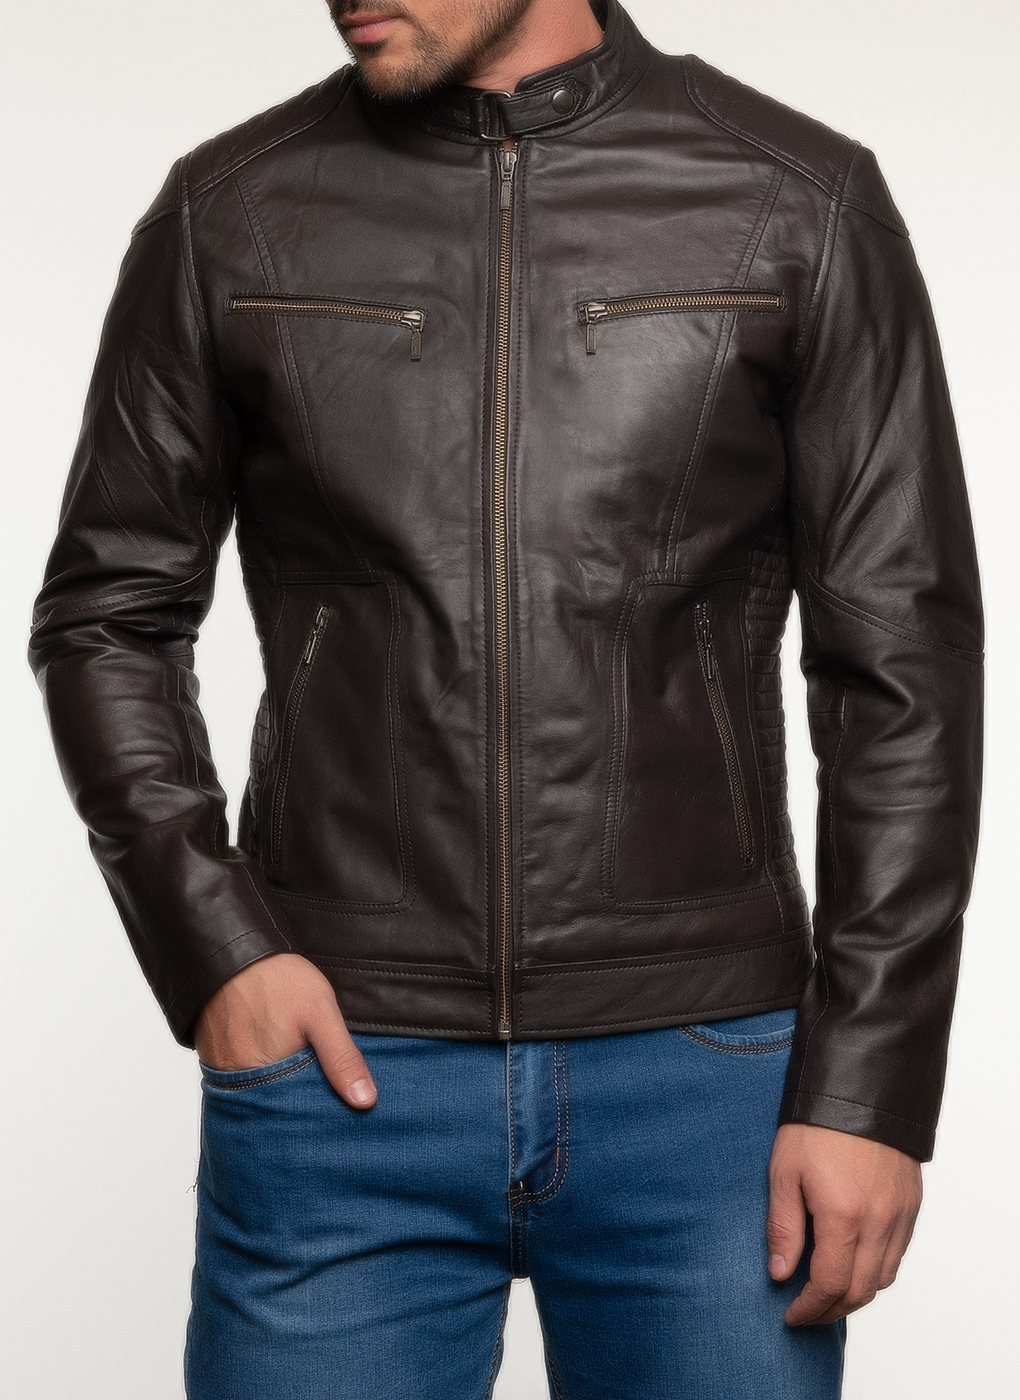 Кожаная куртка мужская Каляев 45223 коричневая 62 RU